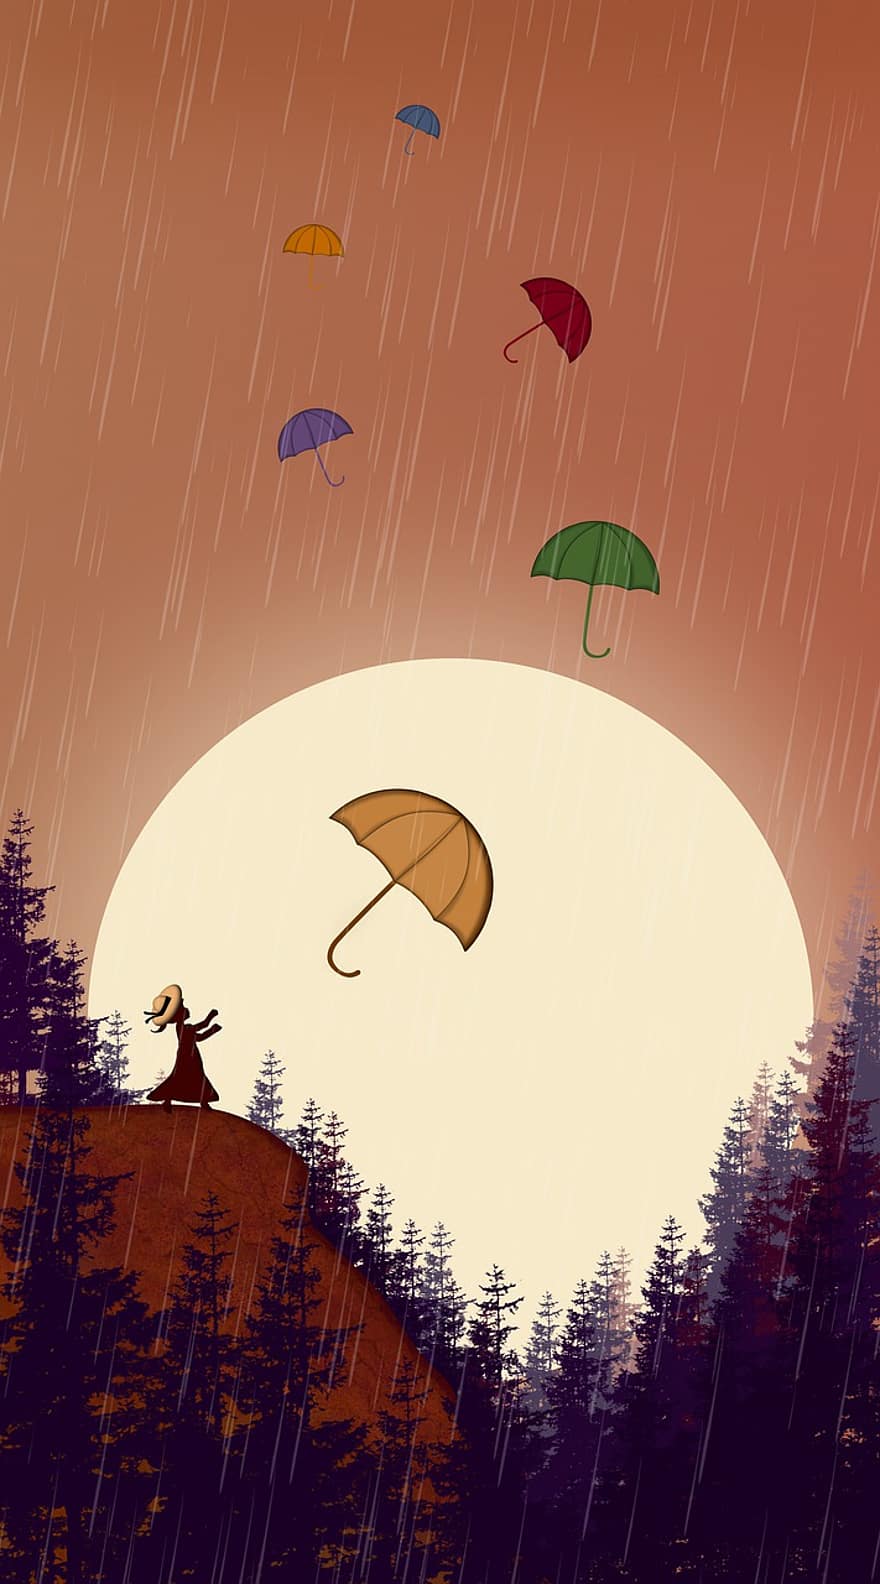 yağmur, şemsiye, gün batımı, doğa, kız, orman, vektör, sonbahar, ağaç, örnekleme, hava